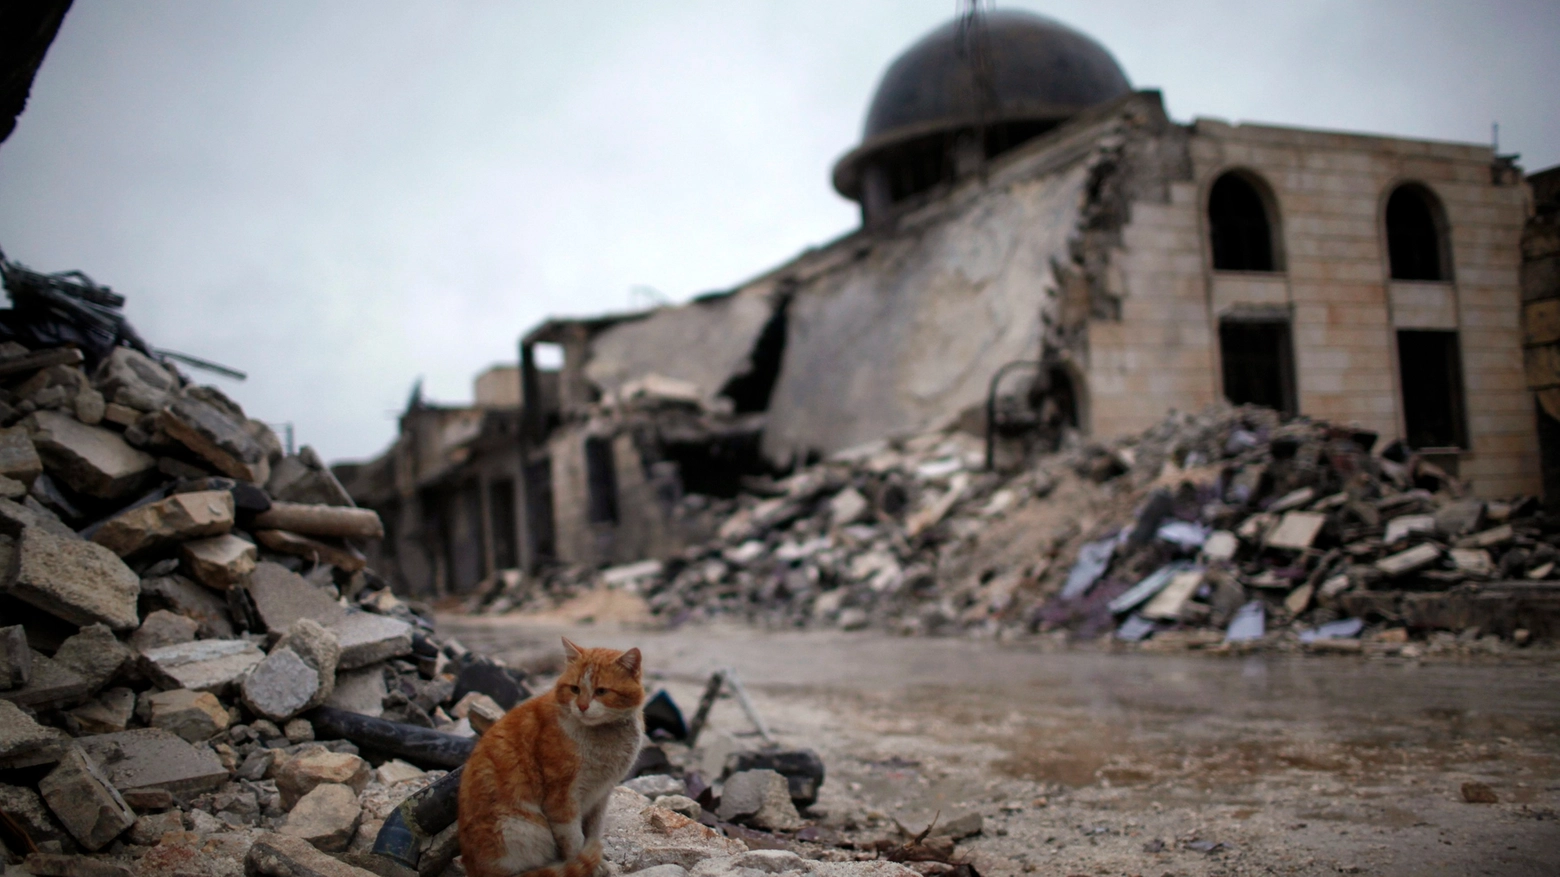 Gatto tra le rovine in una foto Reuters